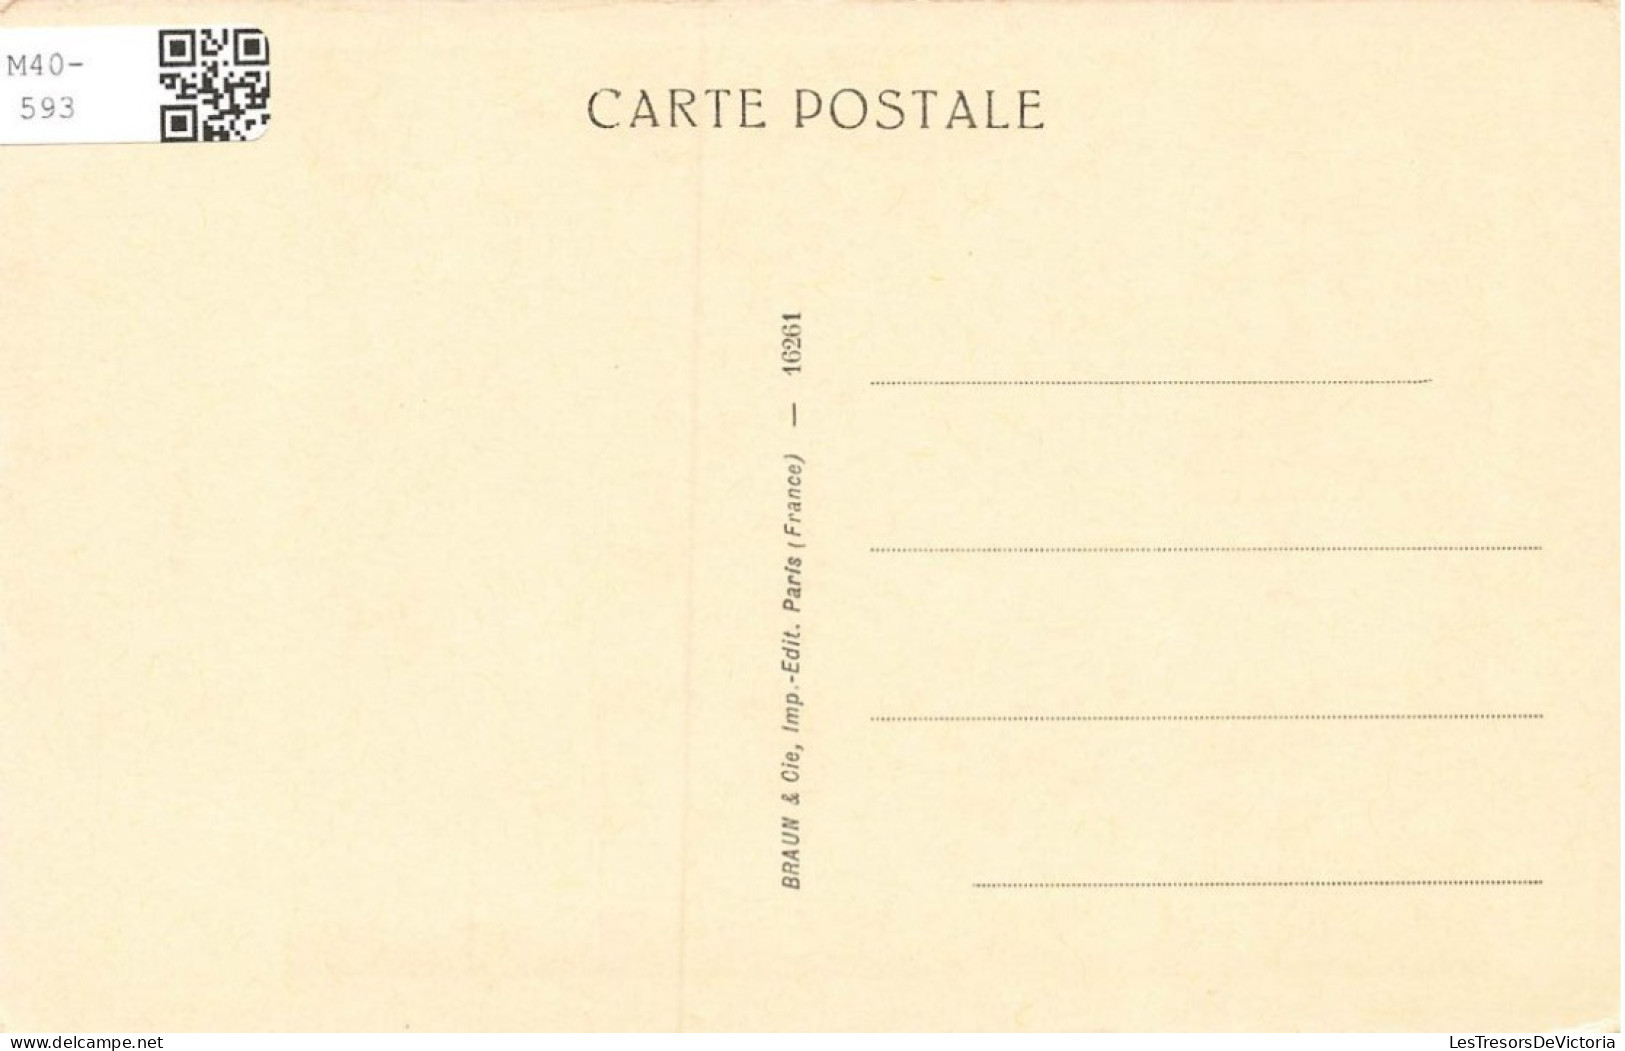 CELEBRITE - Personnage Historique - P De Champaigne - Blaise Pascal - Carte Postale Ancienne - Historische Persönlichkeiten